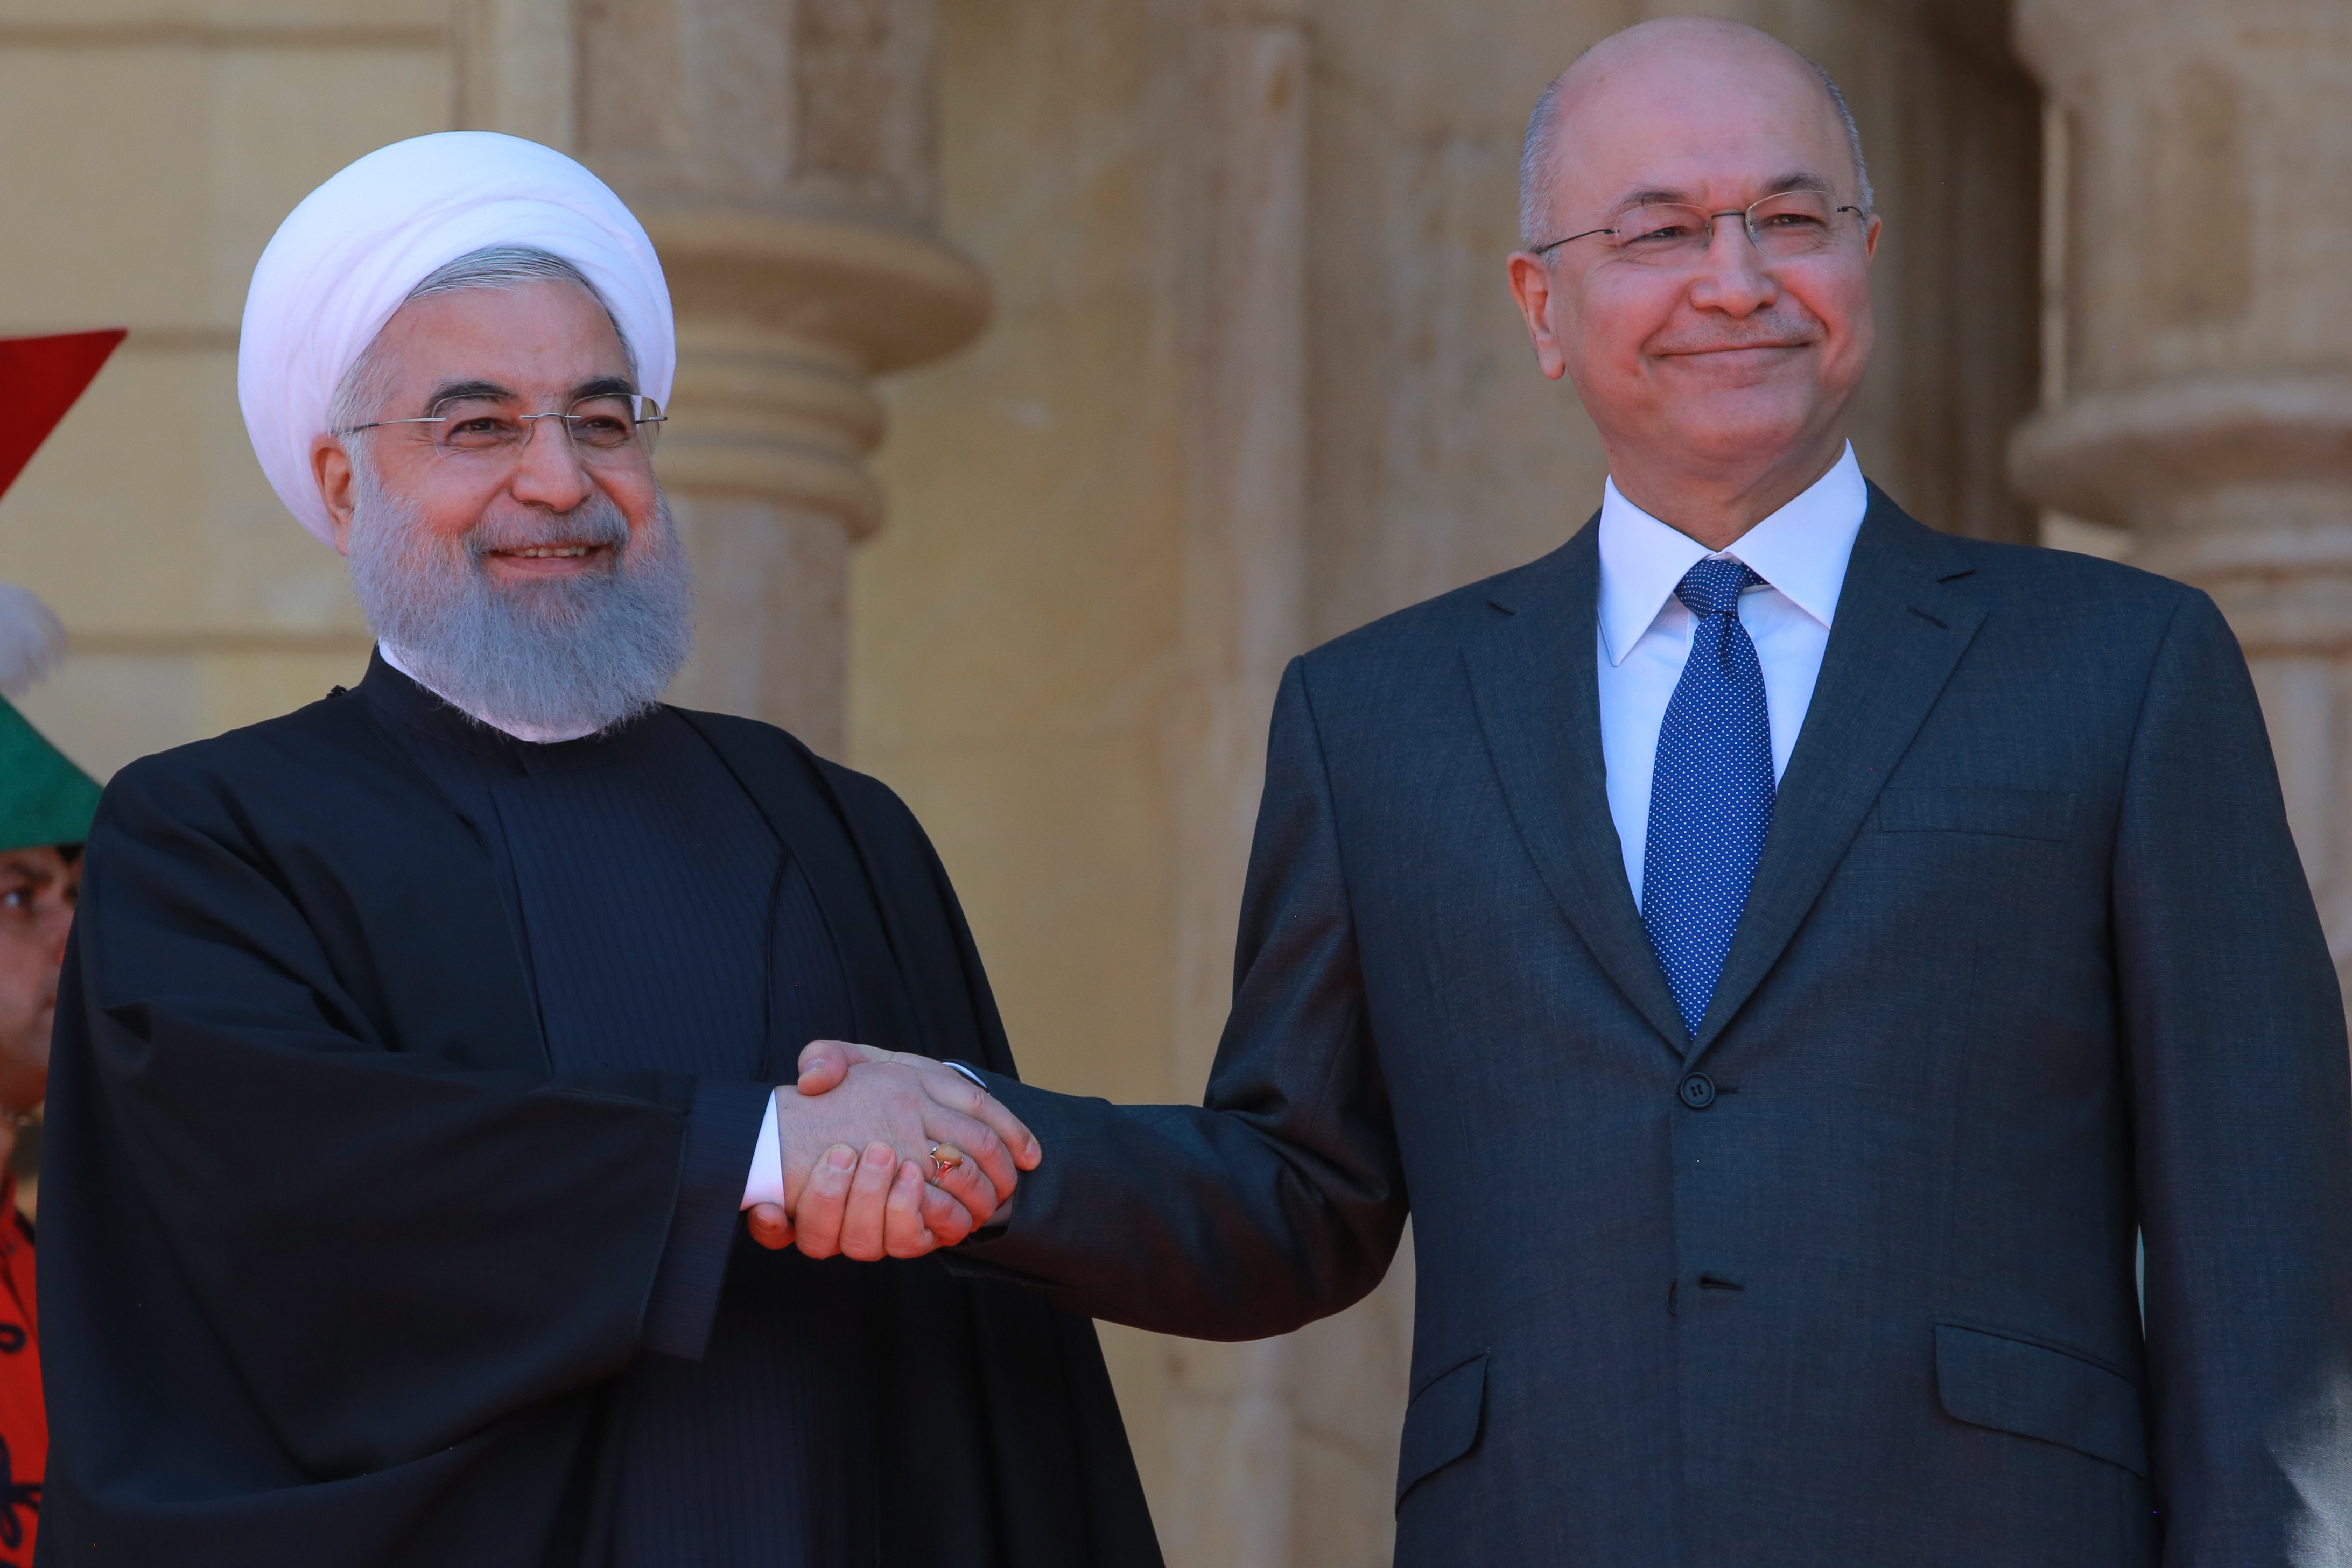 Глава государства решил покинуть пост из-за недоговоренности между партиями о кандидатуре нового премьер-министра Президент Ирака Бархам Салех (справа) с президентом Ирана Хасан Рухани (слева)